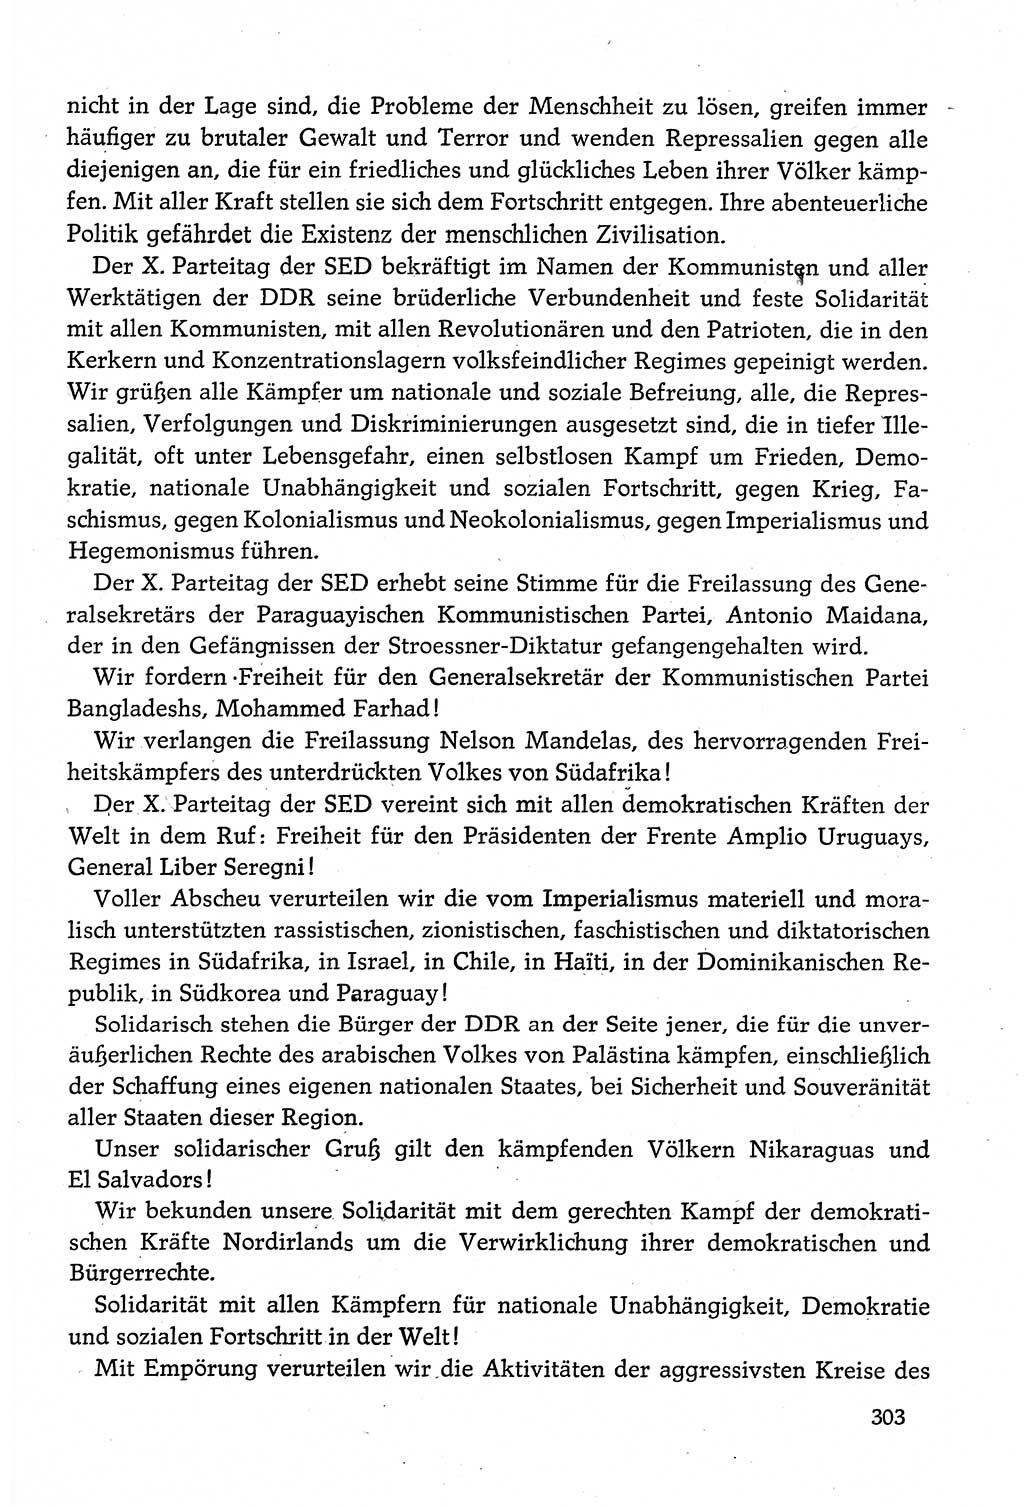 Dokumente der Sozialistischen Einheitspartei Deutschlands (SED) [Deutsche Demokratische Republik (DDR)] 1980-1981, Seite 303 (Dok. SED DDR 1980-1981, S. 303)